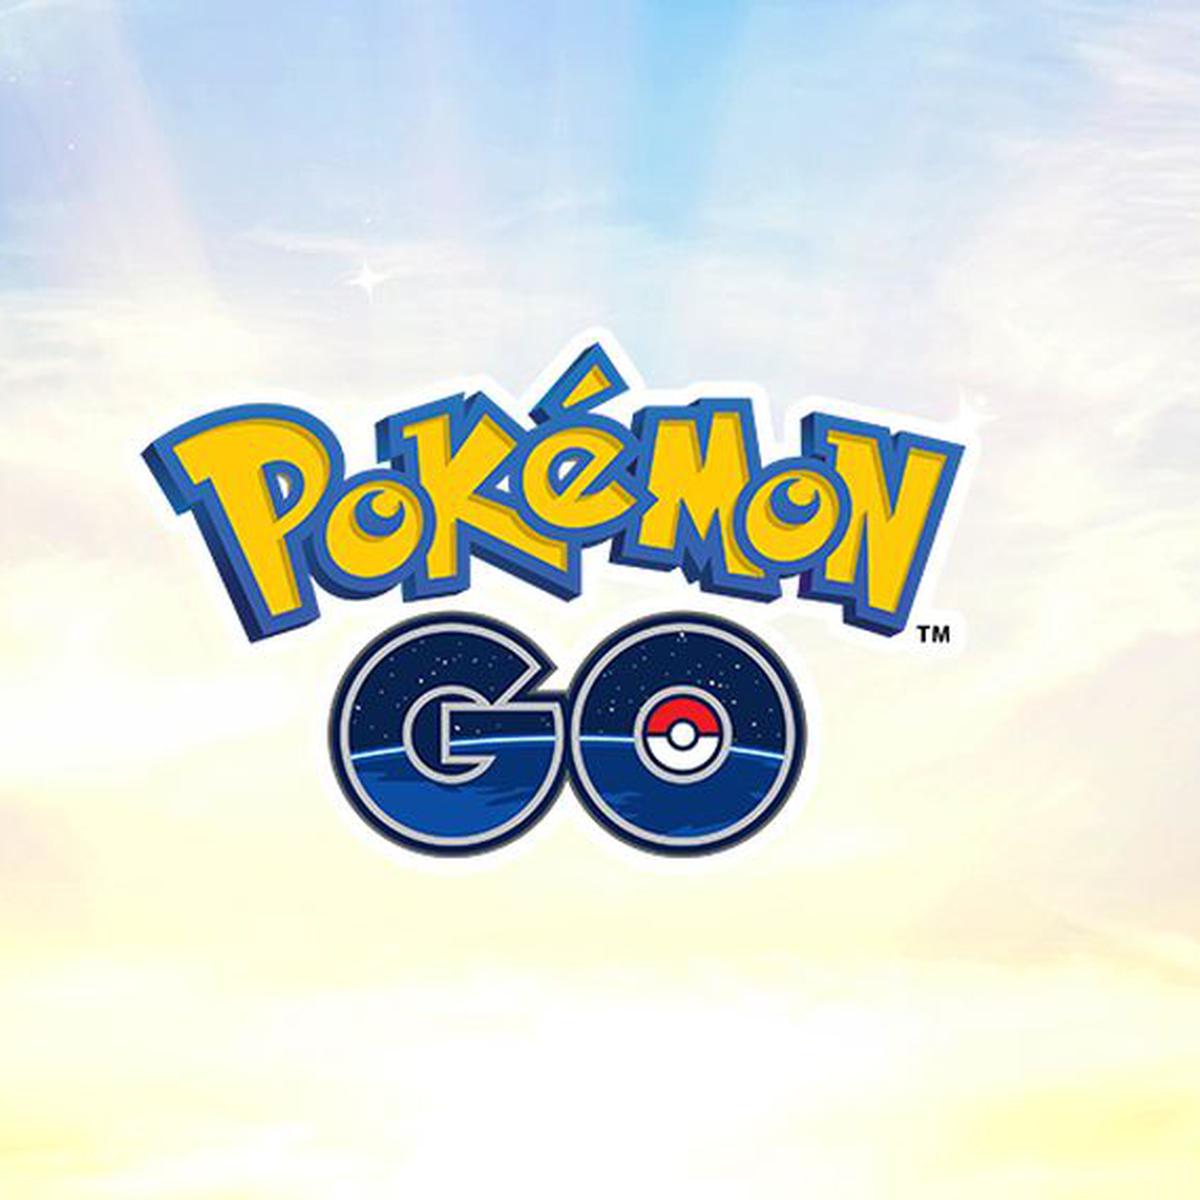 Cómo jugar a Pokémon GO desde casa y cumplir la cuarentena